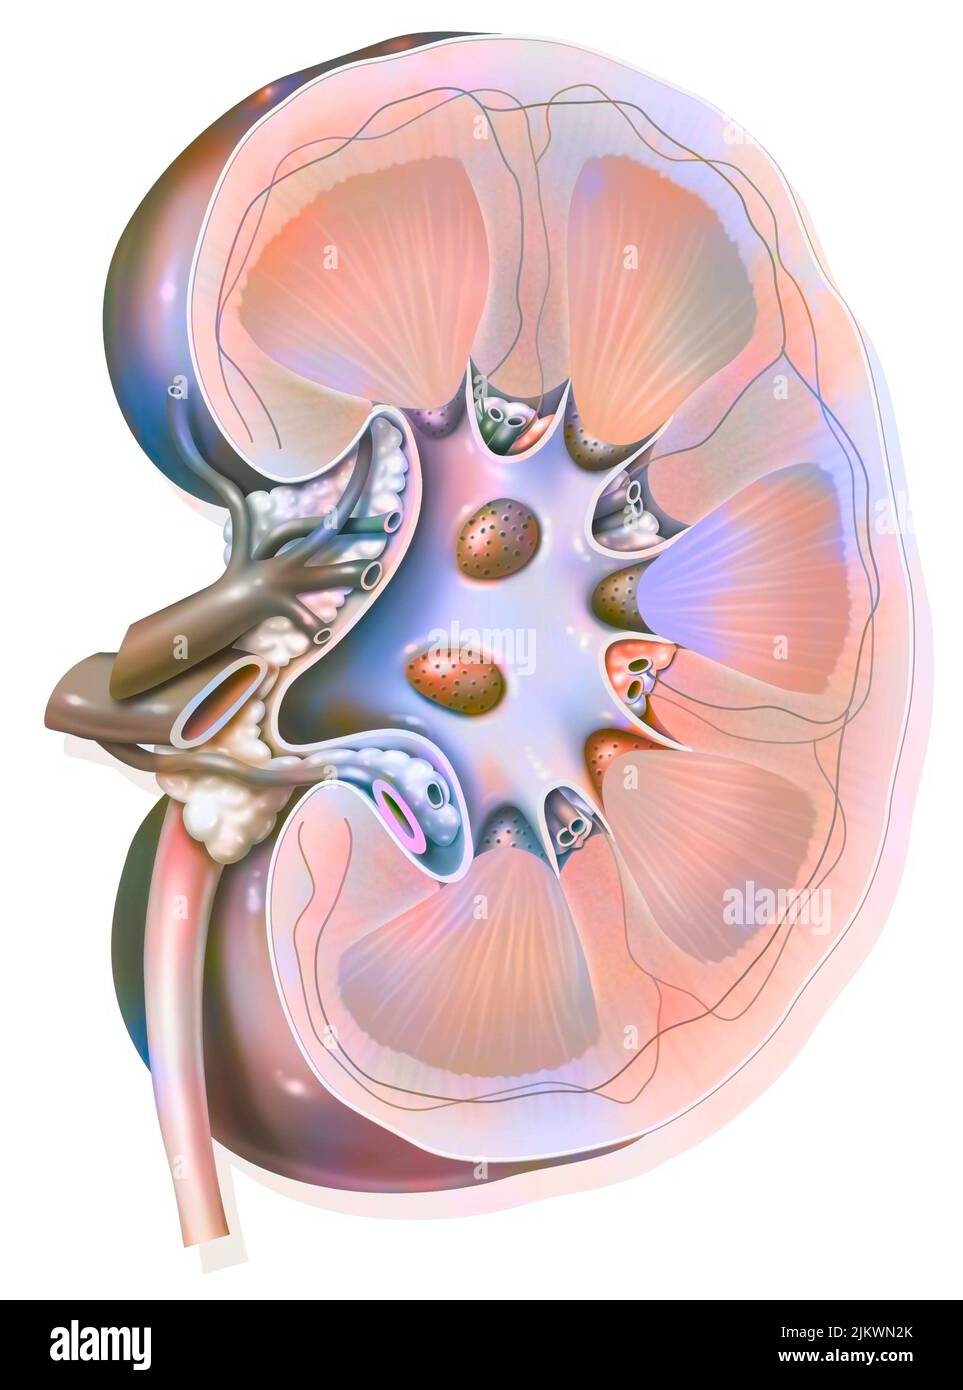 Sezione sagittale del rene sinistro con le arterie e le vene renali. Foto Stock